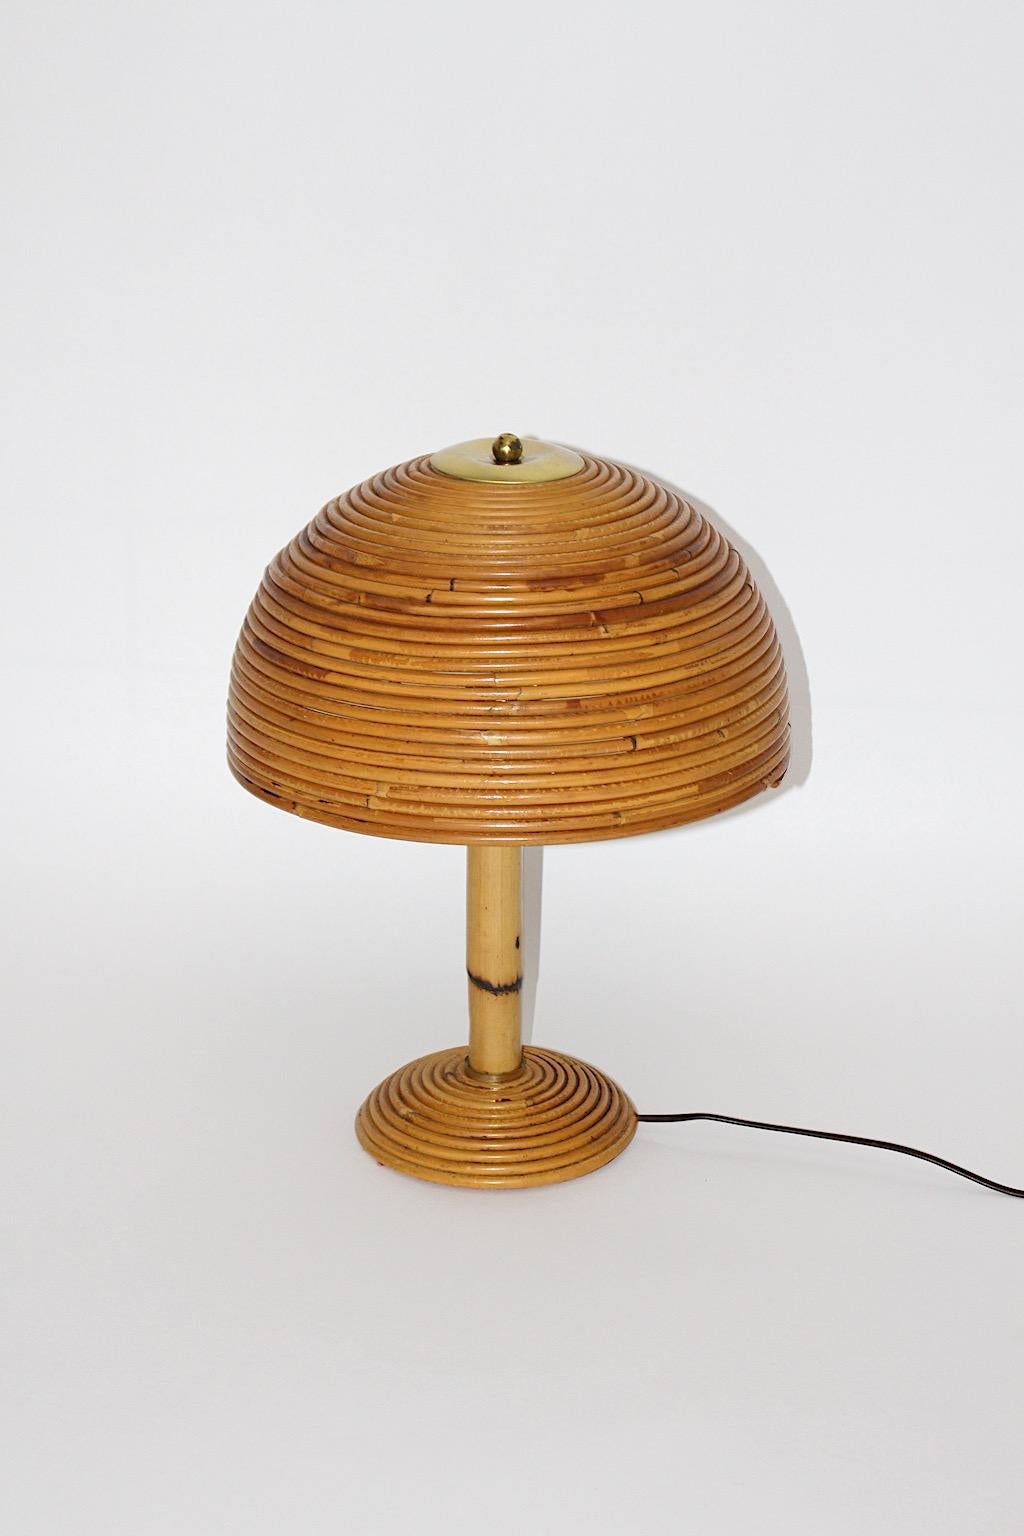 Organische moderne Vintage-Tischlampe wie Pilz aus Rattan und Messing Italien, 1970er Jahre.
Ein schöner Lampenschirm in Pilzform zeigt Rattanarbeiten und Messingdetails, der Stamm aus Bambus weist ein lebendiges Spiel aus Struktur auf.
Eine E 27